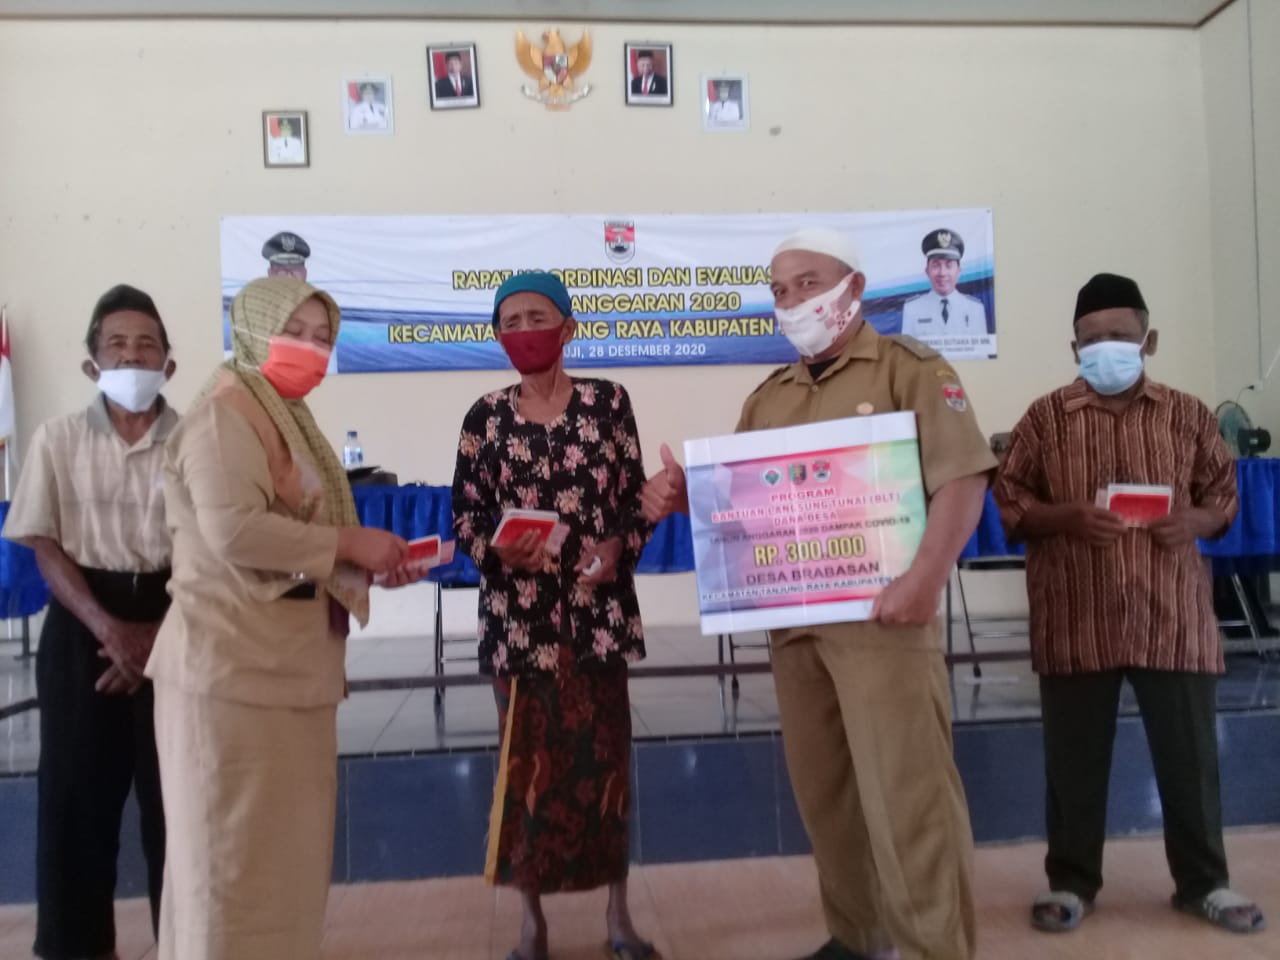 Kades Desa Brabasan: Terimakasih Banyak Pak Ir.H. Joko Widodo atas BLT